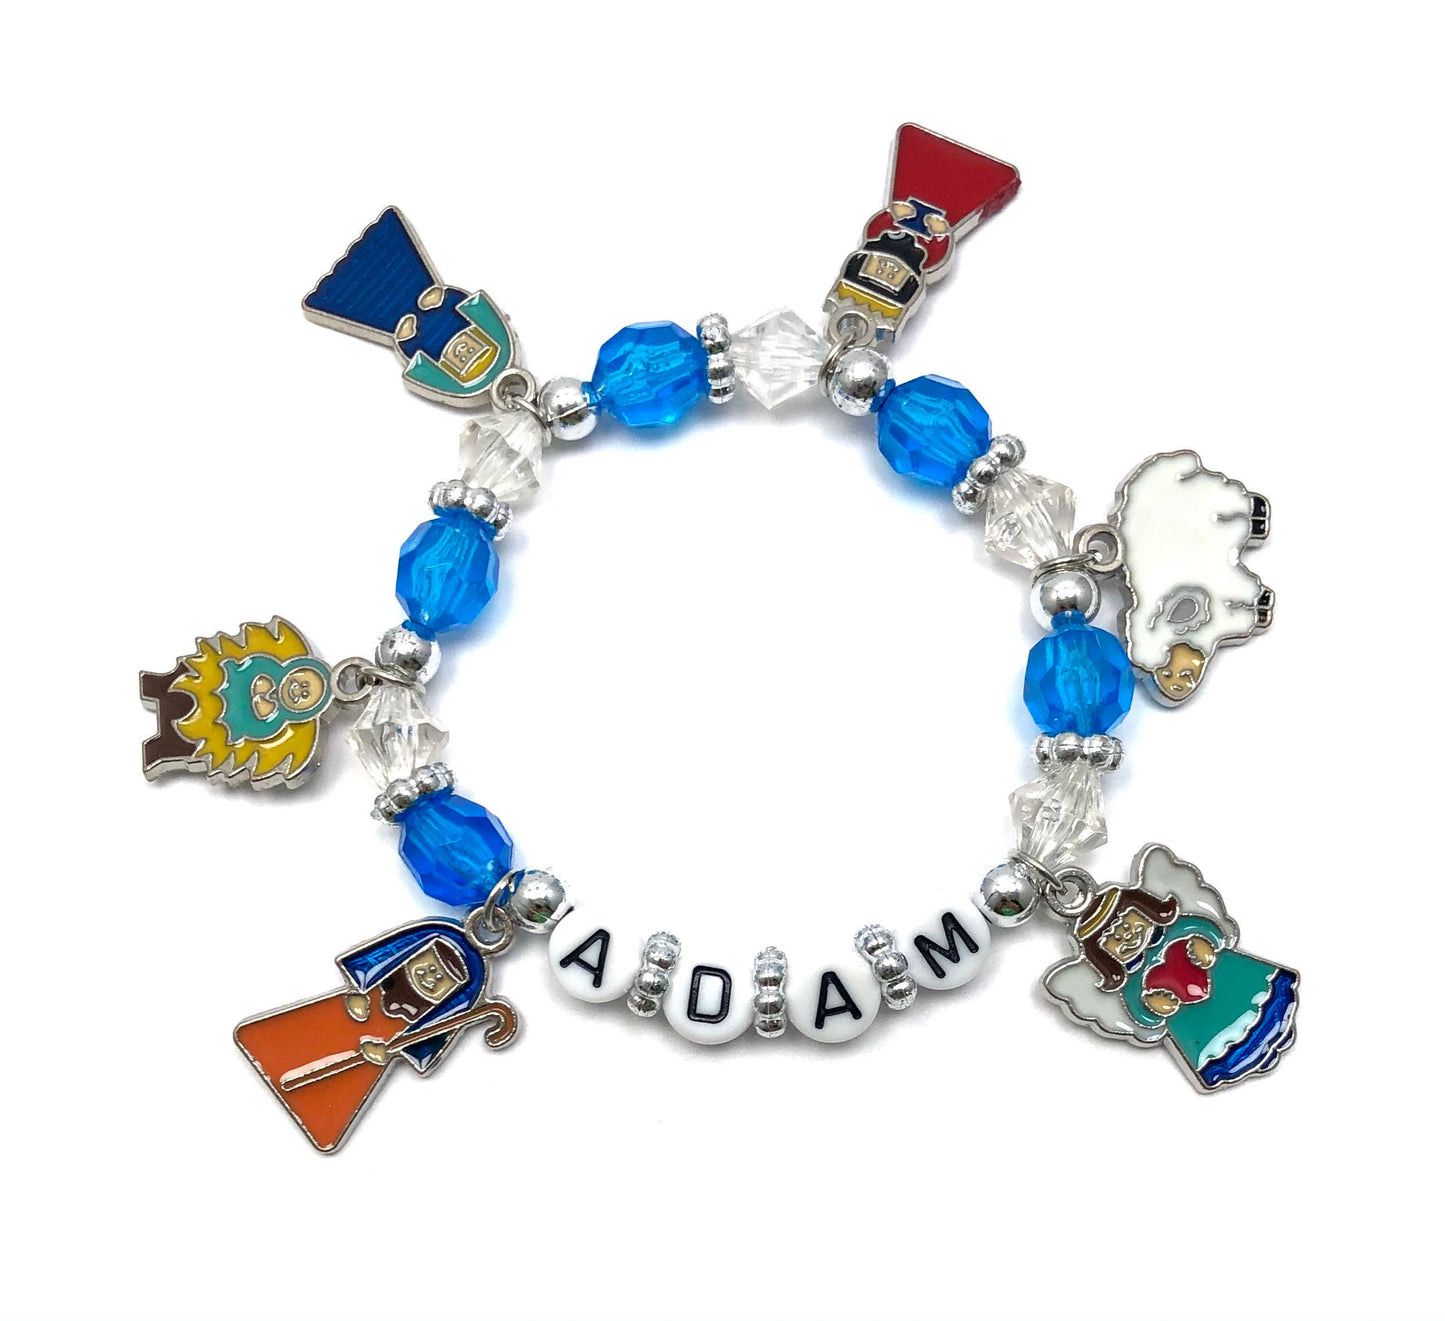 Nativity charm bracelet for kids / religious gift for kids